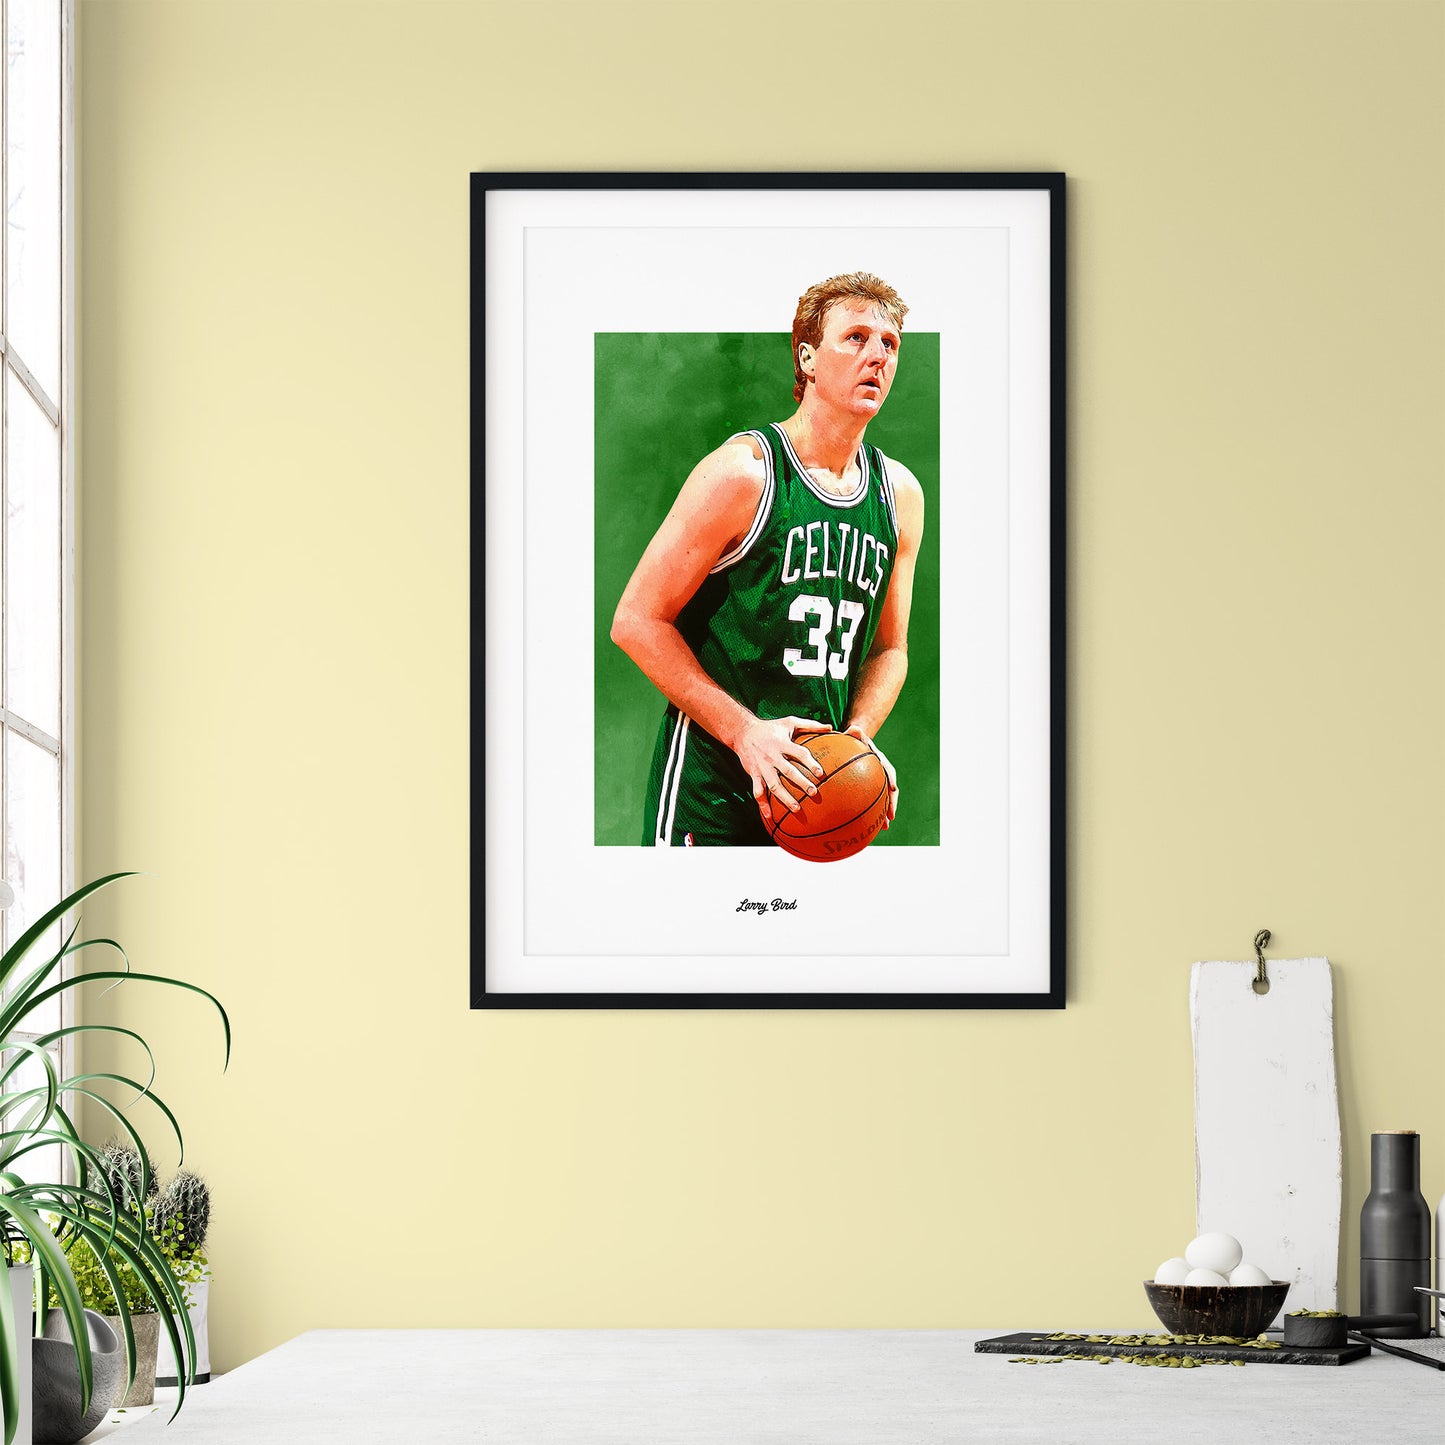 Larry Bird Poster and Canvas, Celtics Basketball Fan Art Print